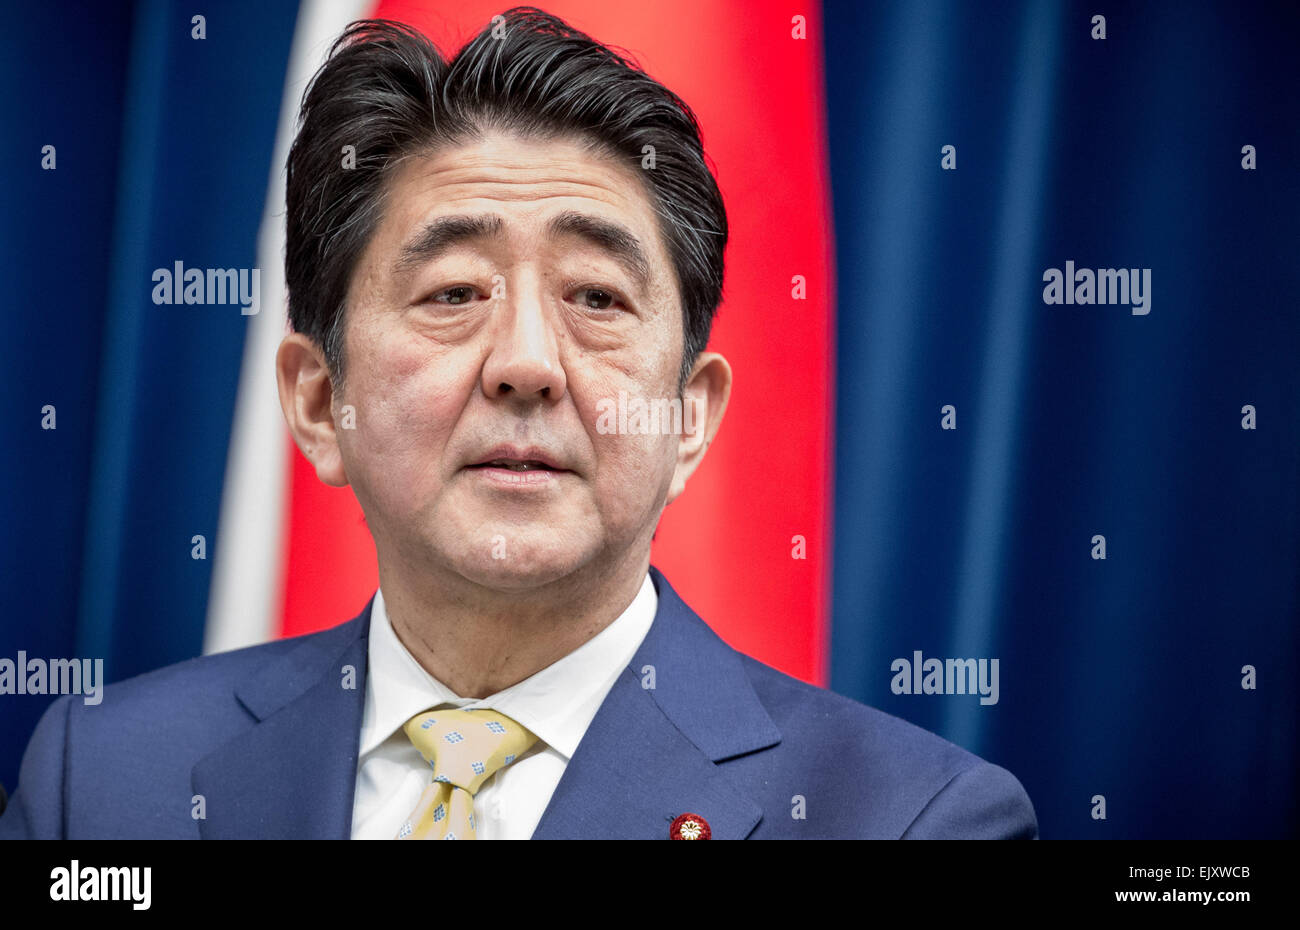 Tokyo, Giappone. 9 Mar, 2015. Giappone il Primo Ministro Shinzo Abe, fotografato presso l'ufficio del Primo Ministro a Tokyo in Giappone, 9 marzo 2015. Foto: Michael Kappeler/dpa/Alamy Live News Foto Stock